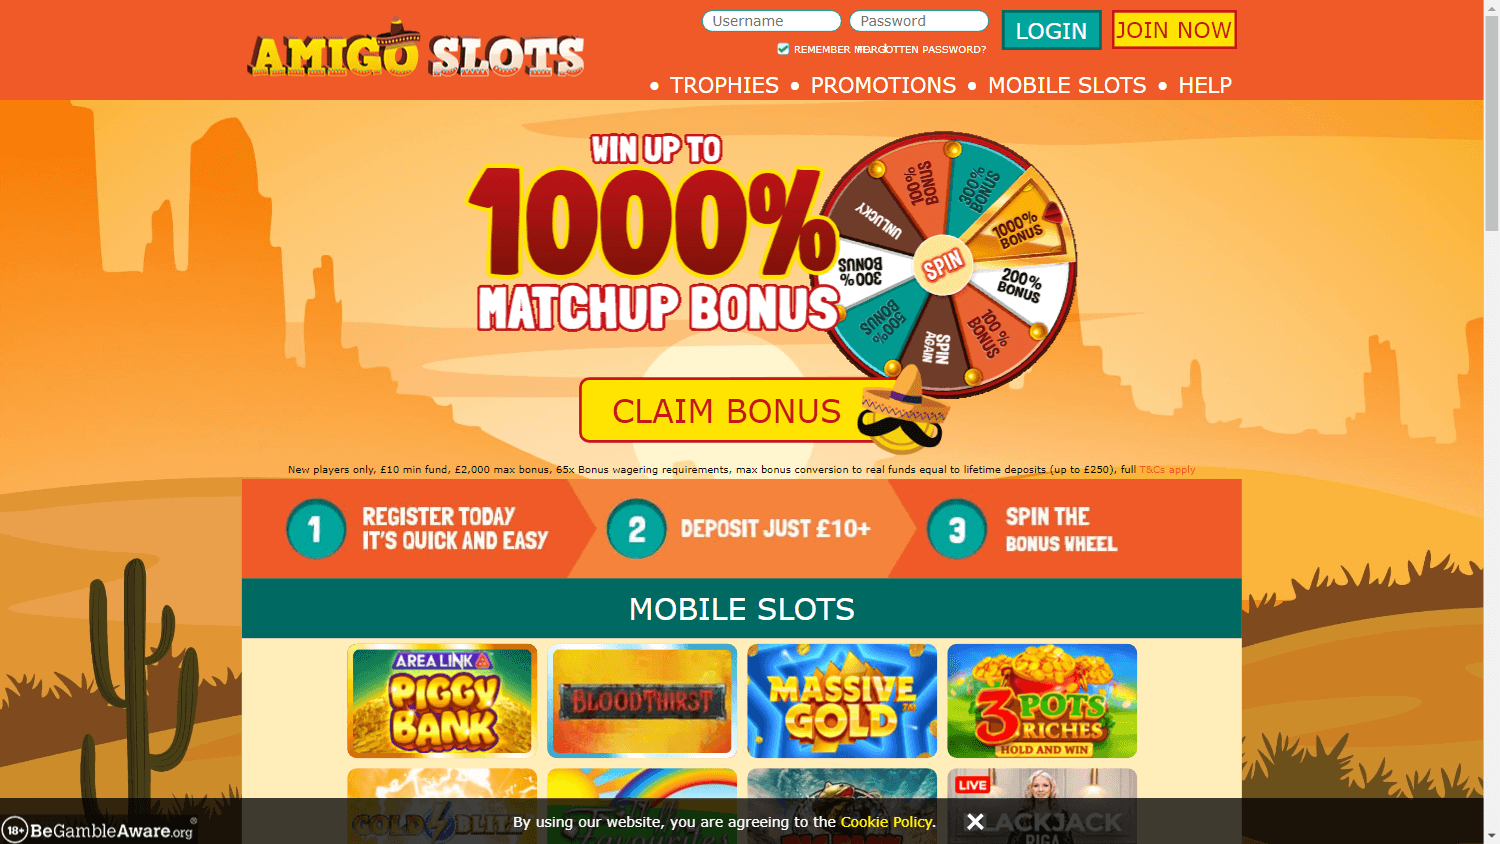 amigo_slots_casino_homepage_desktop